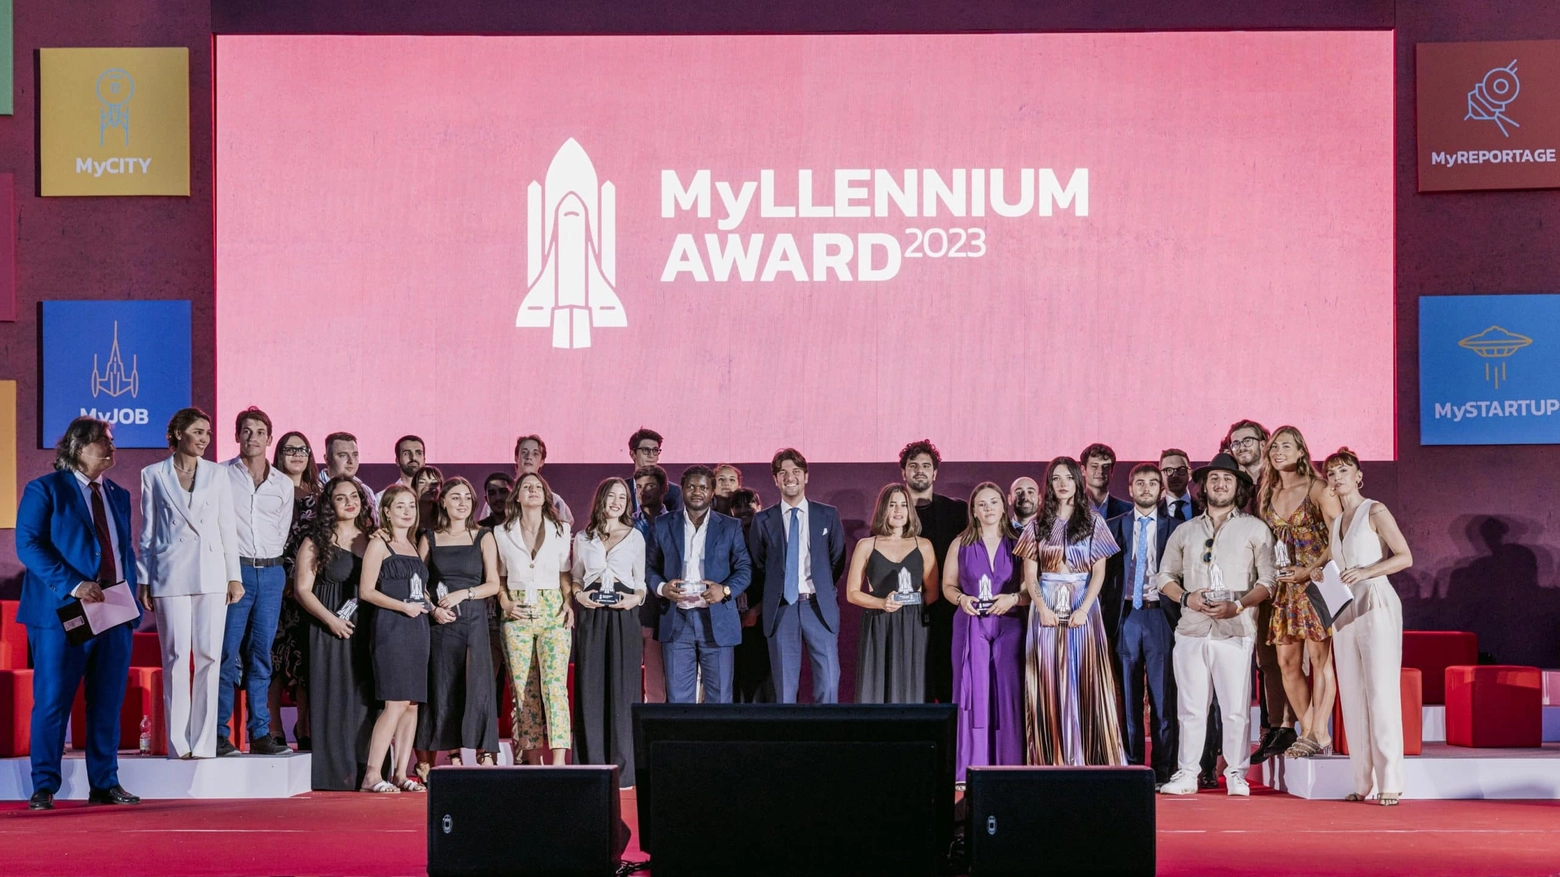 Millennium Award, i 32 vincitori under 30